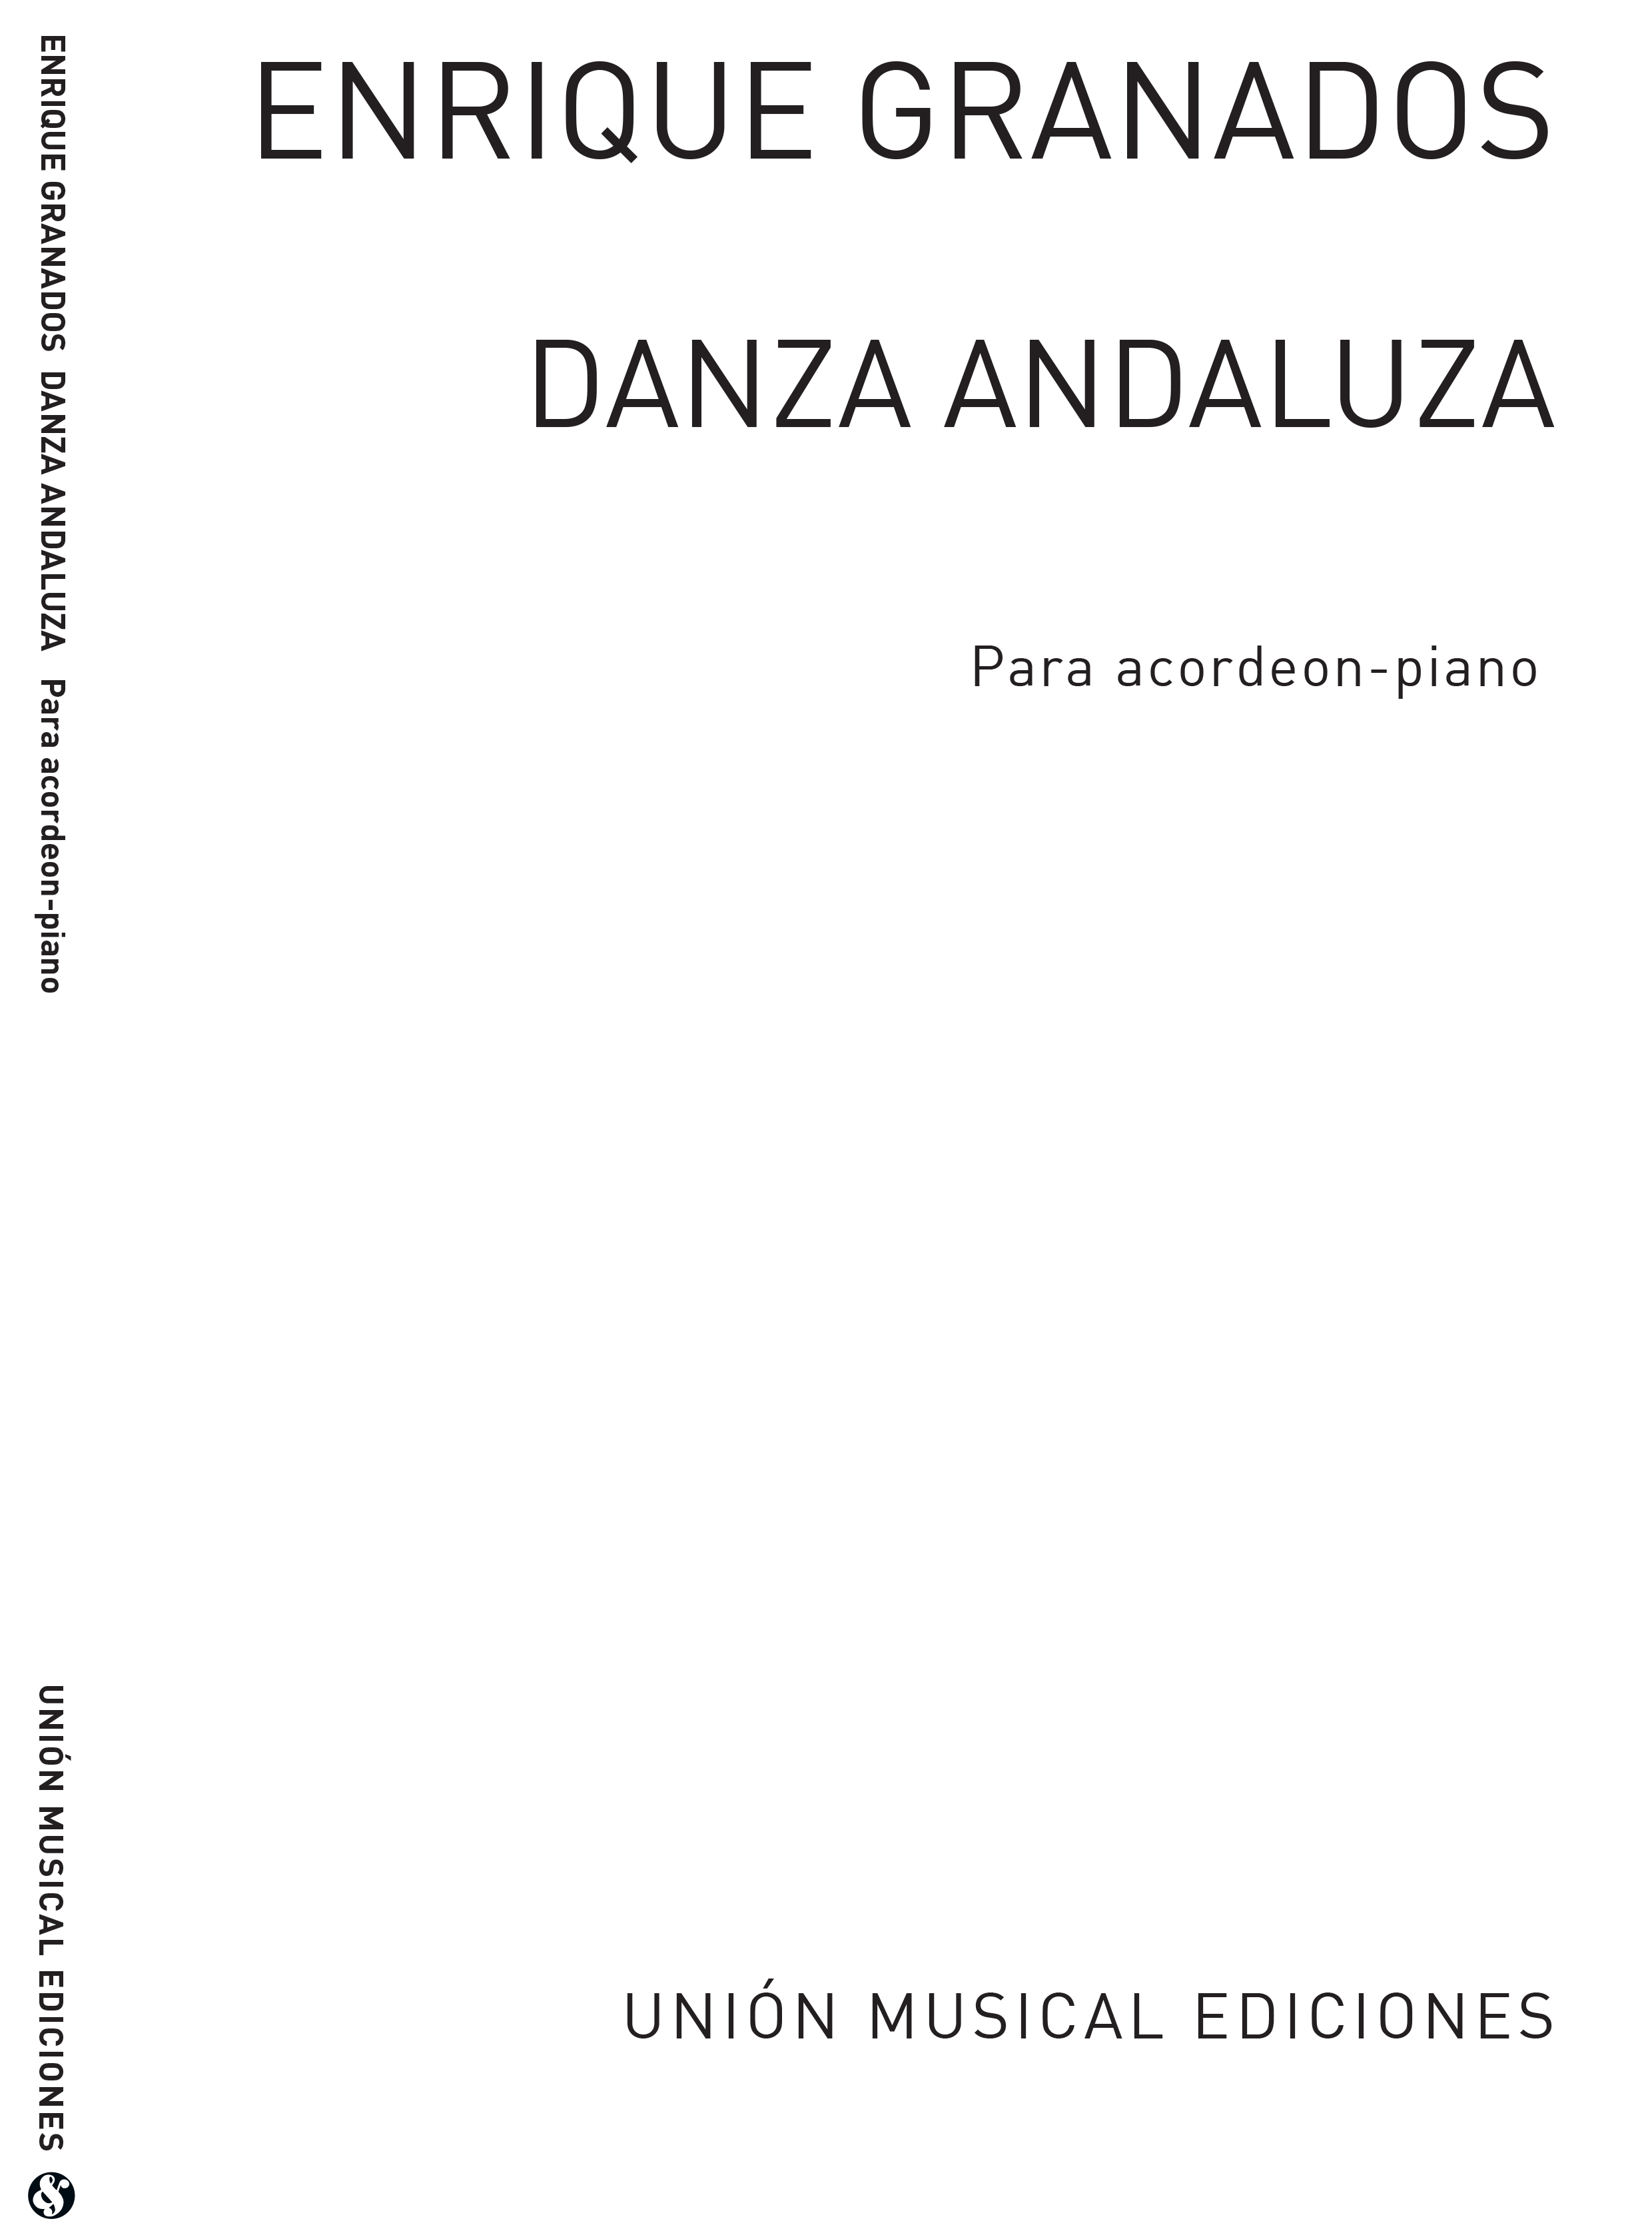 Enrique Granados: Danza Espanola No.5 Andaluza: Accordion: Instrumental Work